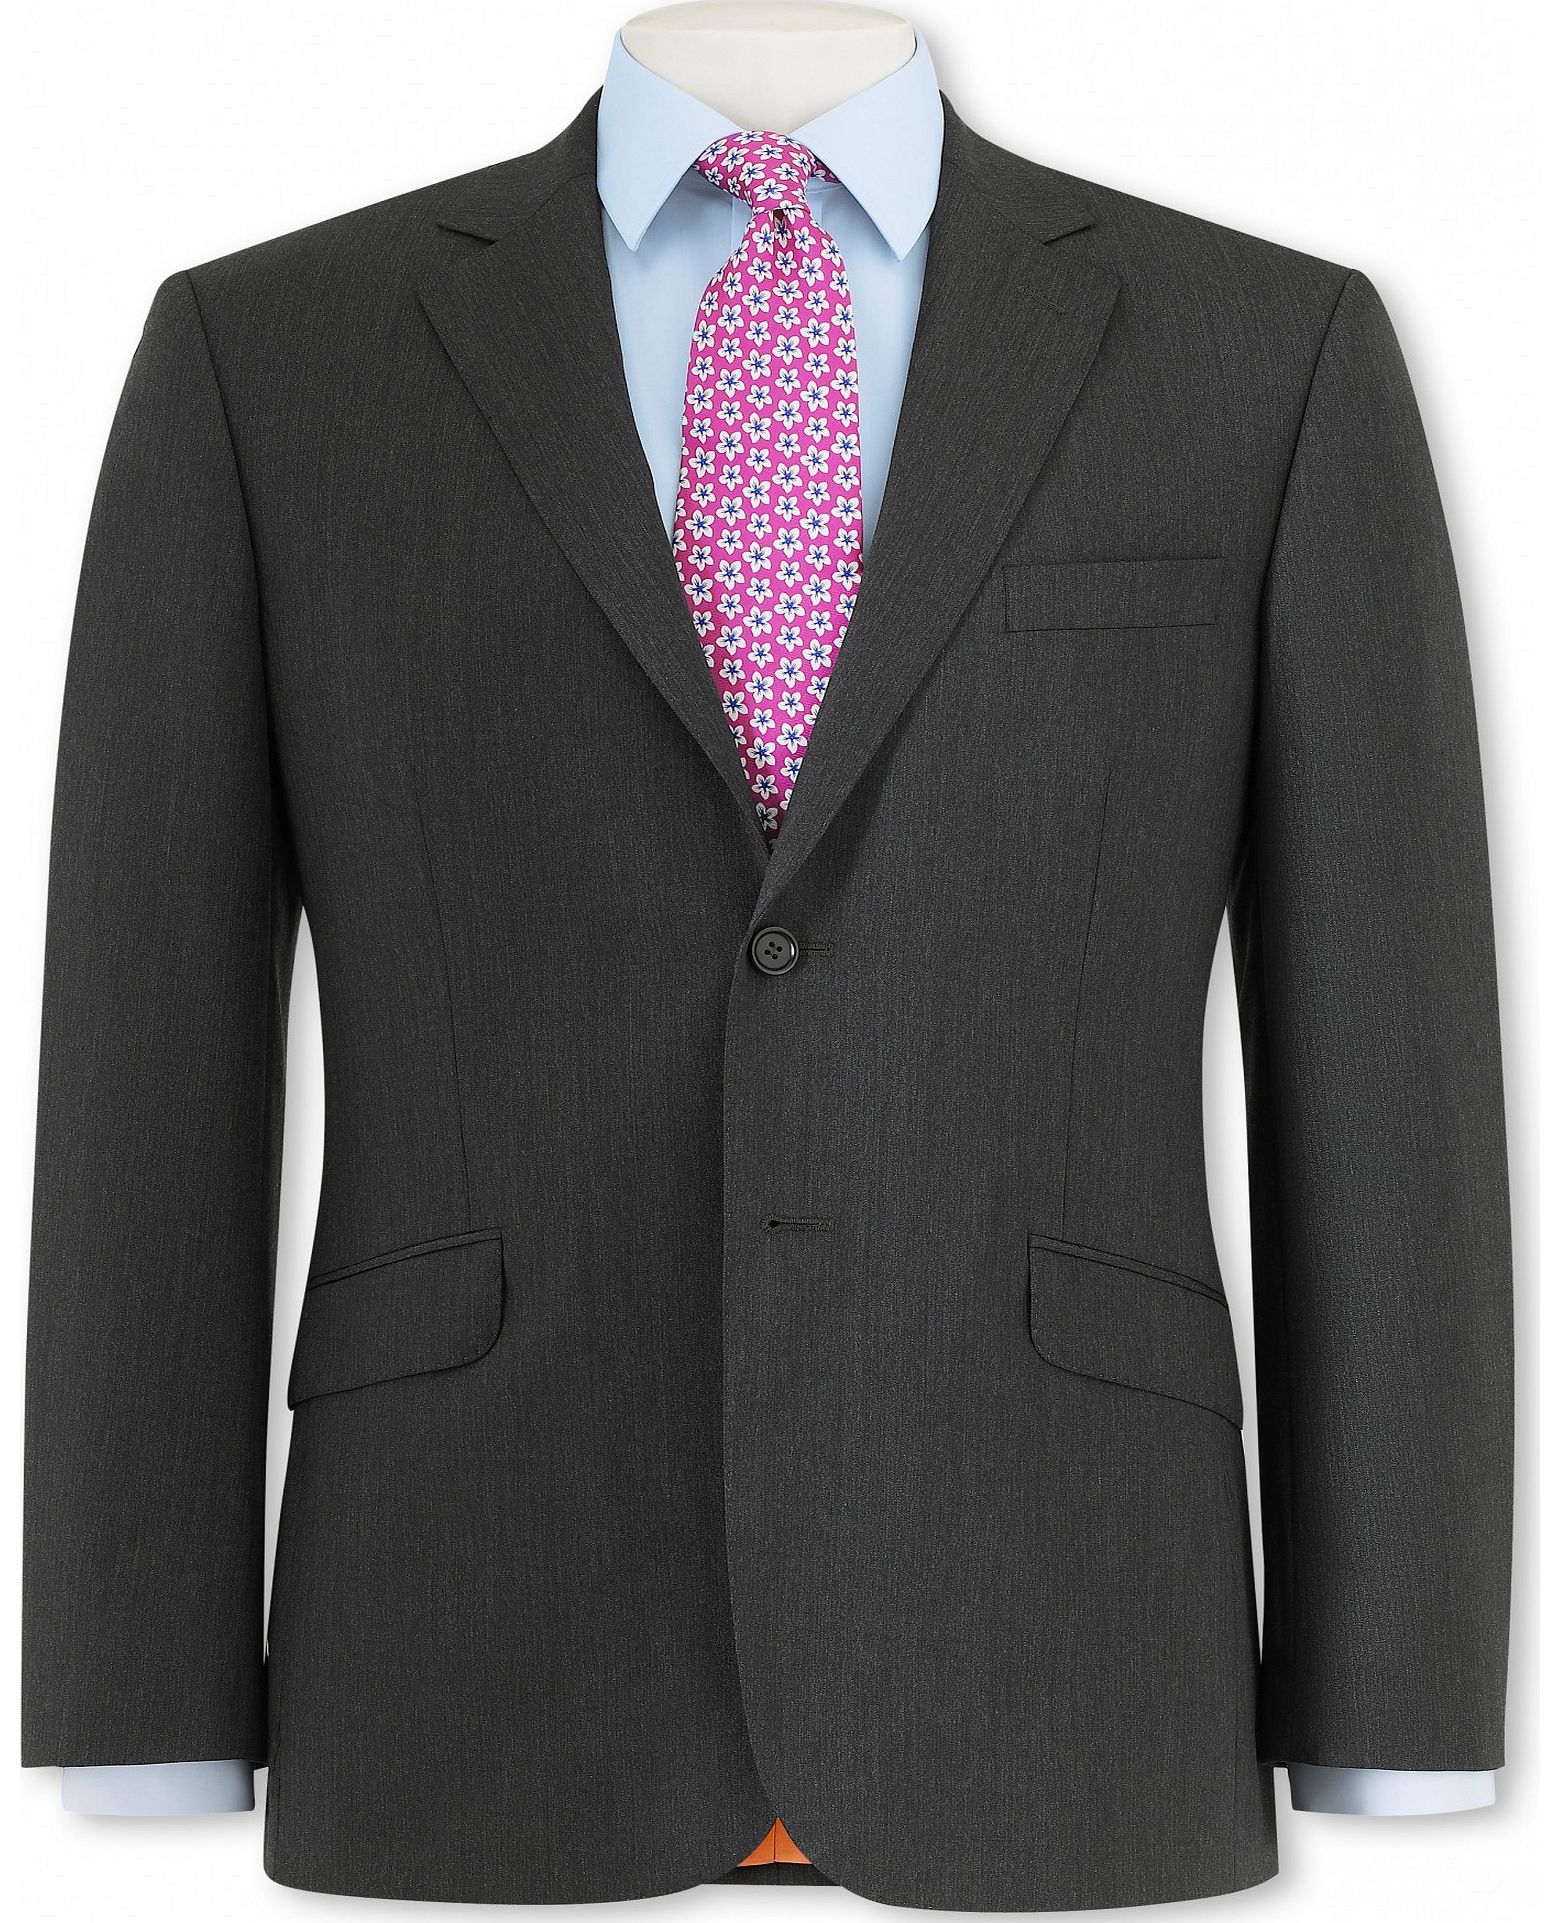 Grey Herringbone Suit Jacket 38`` Long